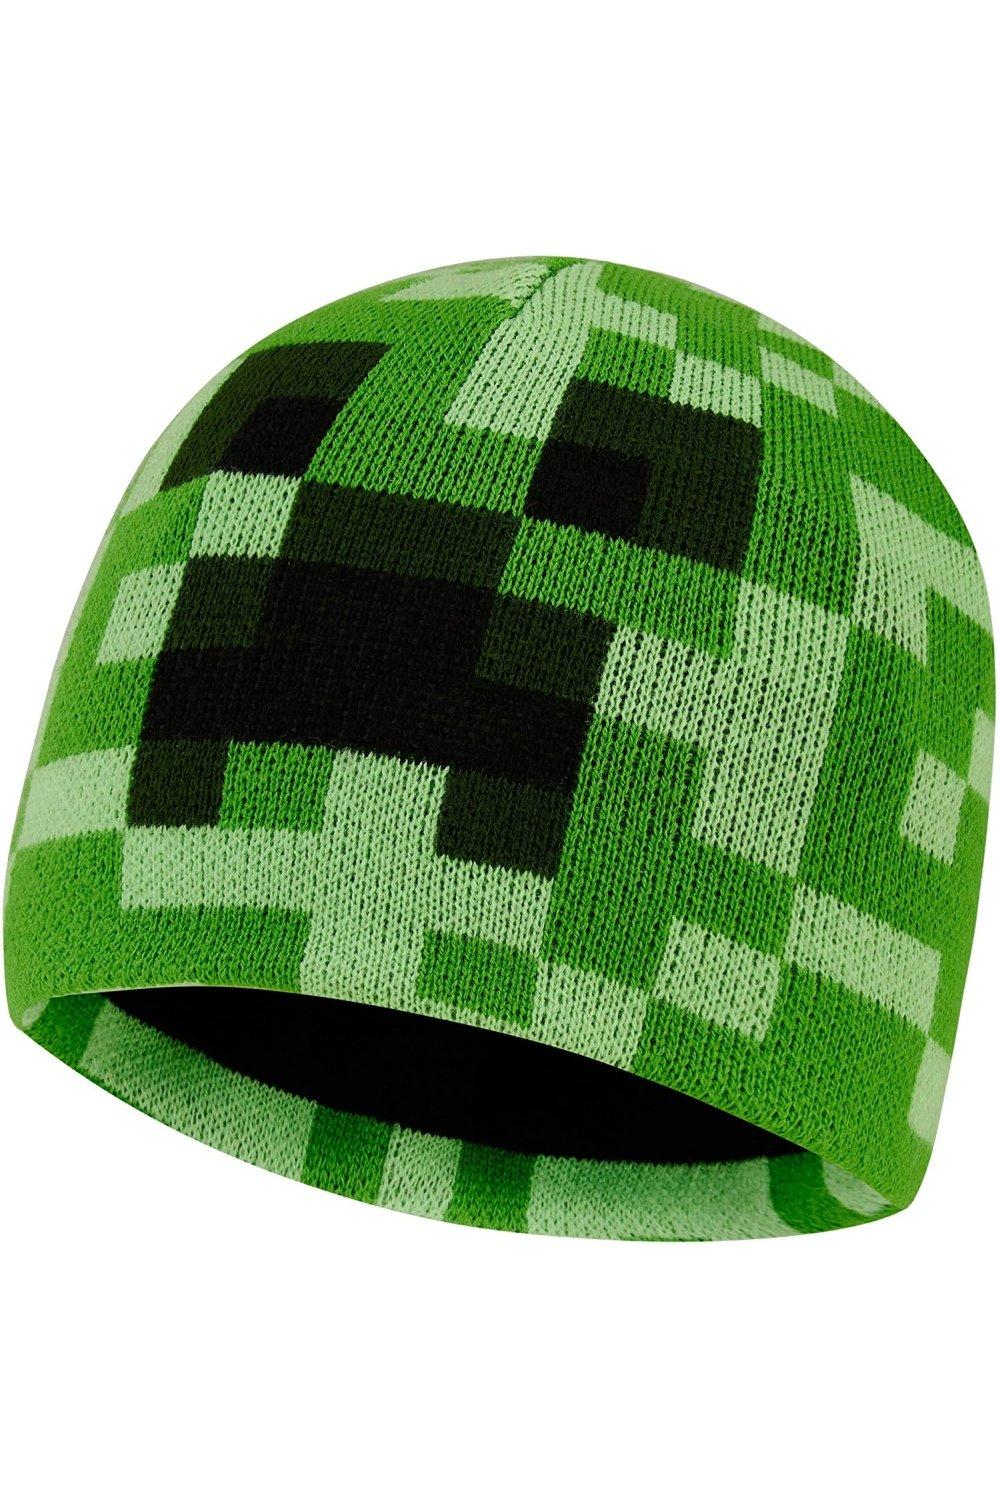 Шапка-бини Minecraft, зеленый зимняя однотонная вязаная шапка бини теплые вязаные шапки шапка с черепом манишка толстая зимняя шапка шарф для мужчин женщин мужчин